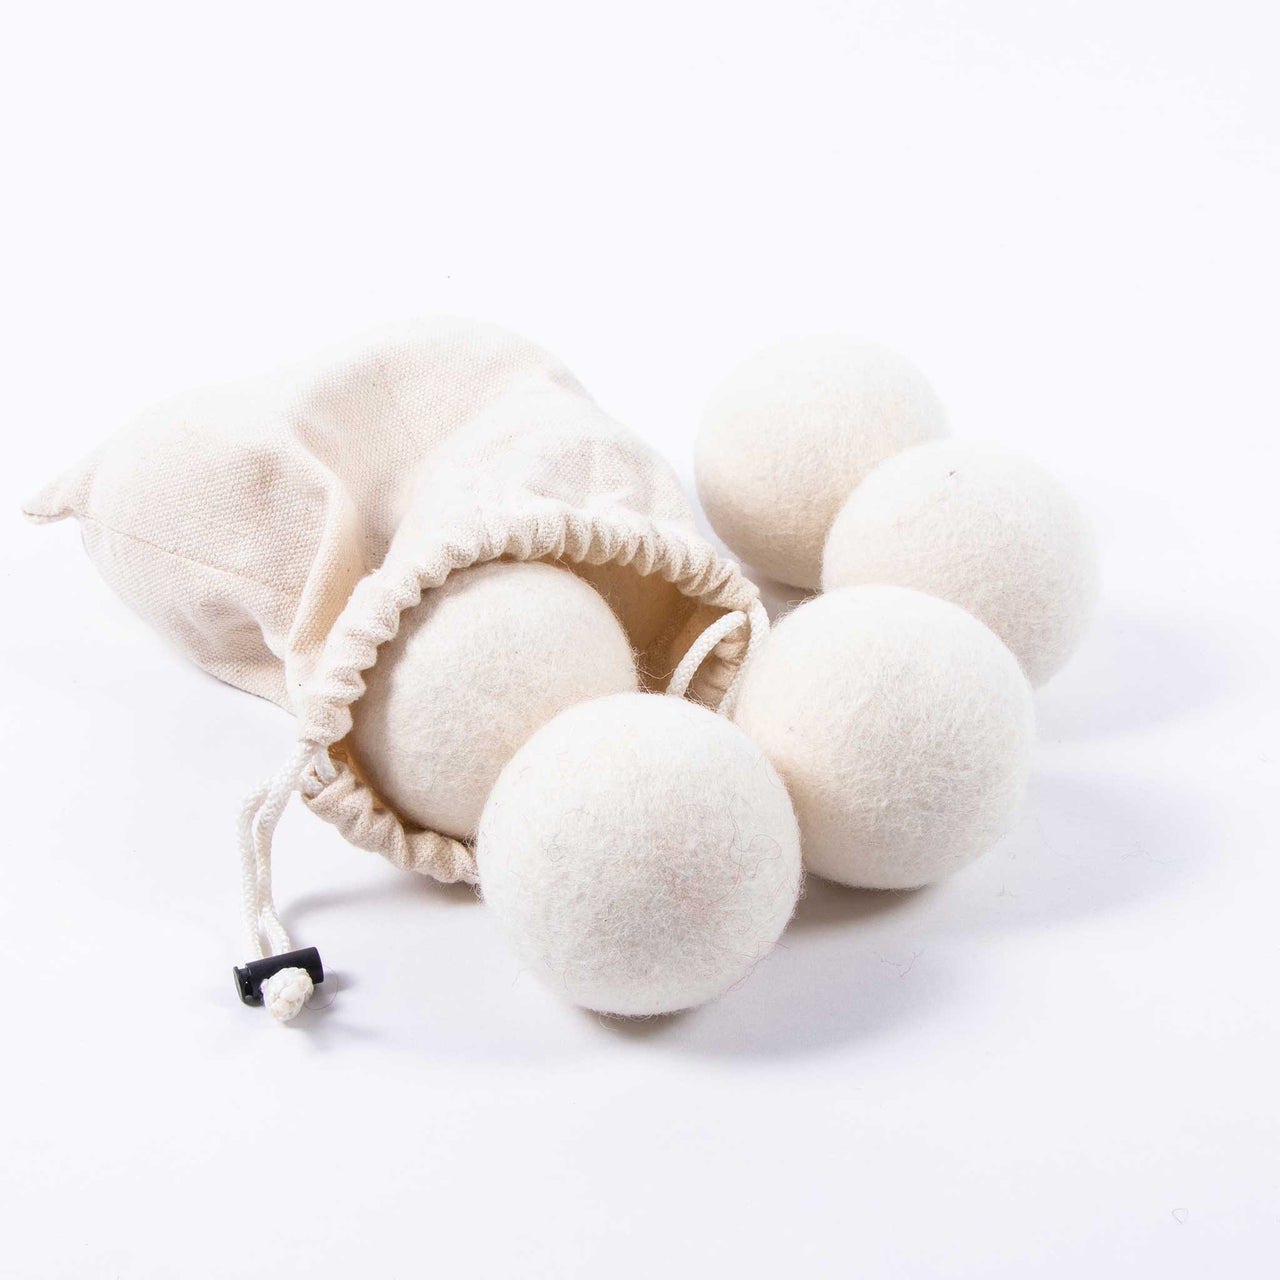 Wool felt white color Dryer Ball